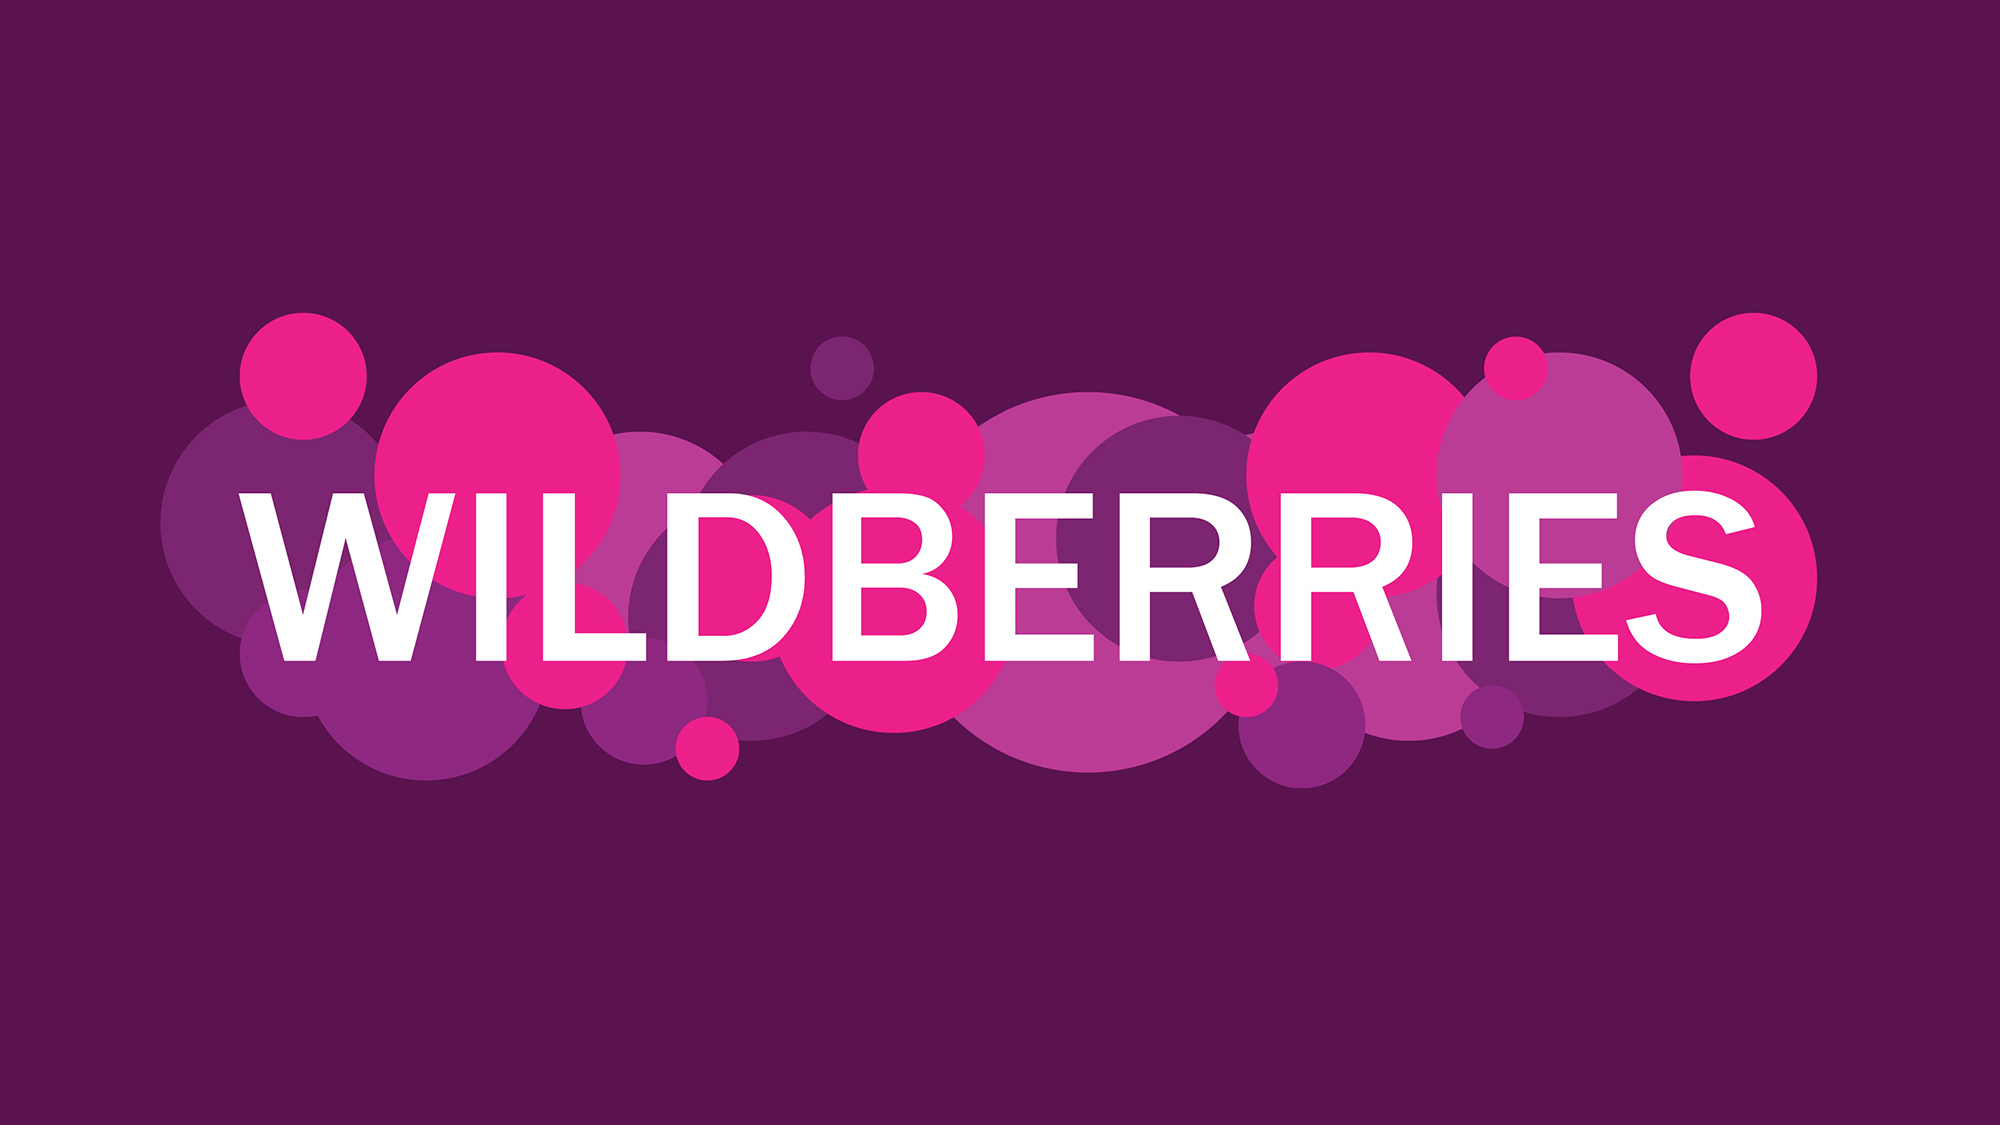  Wildberries         ?   